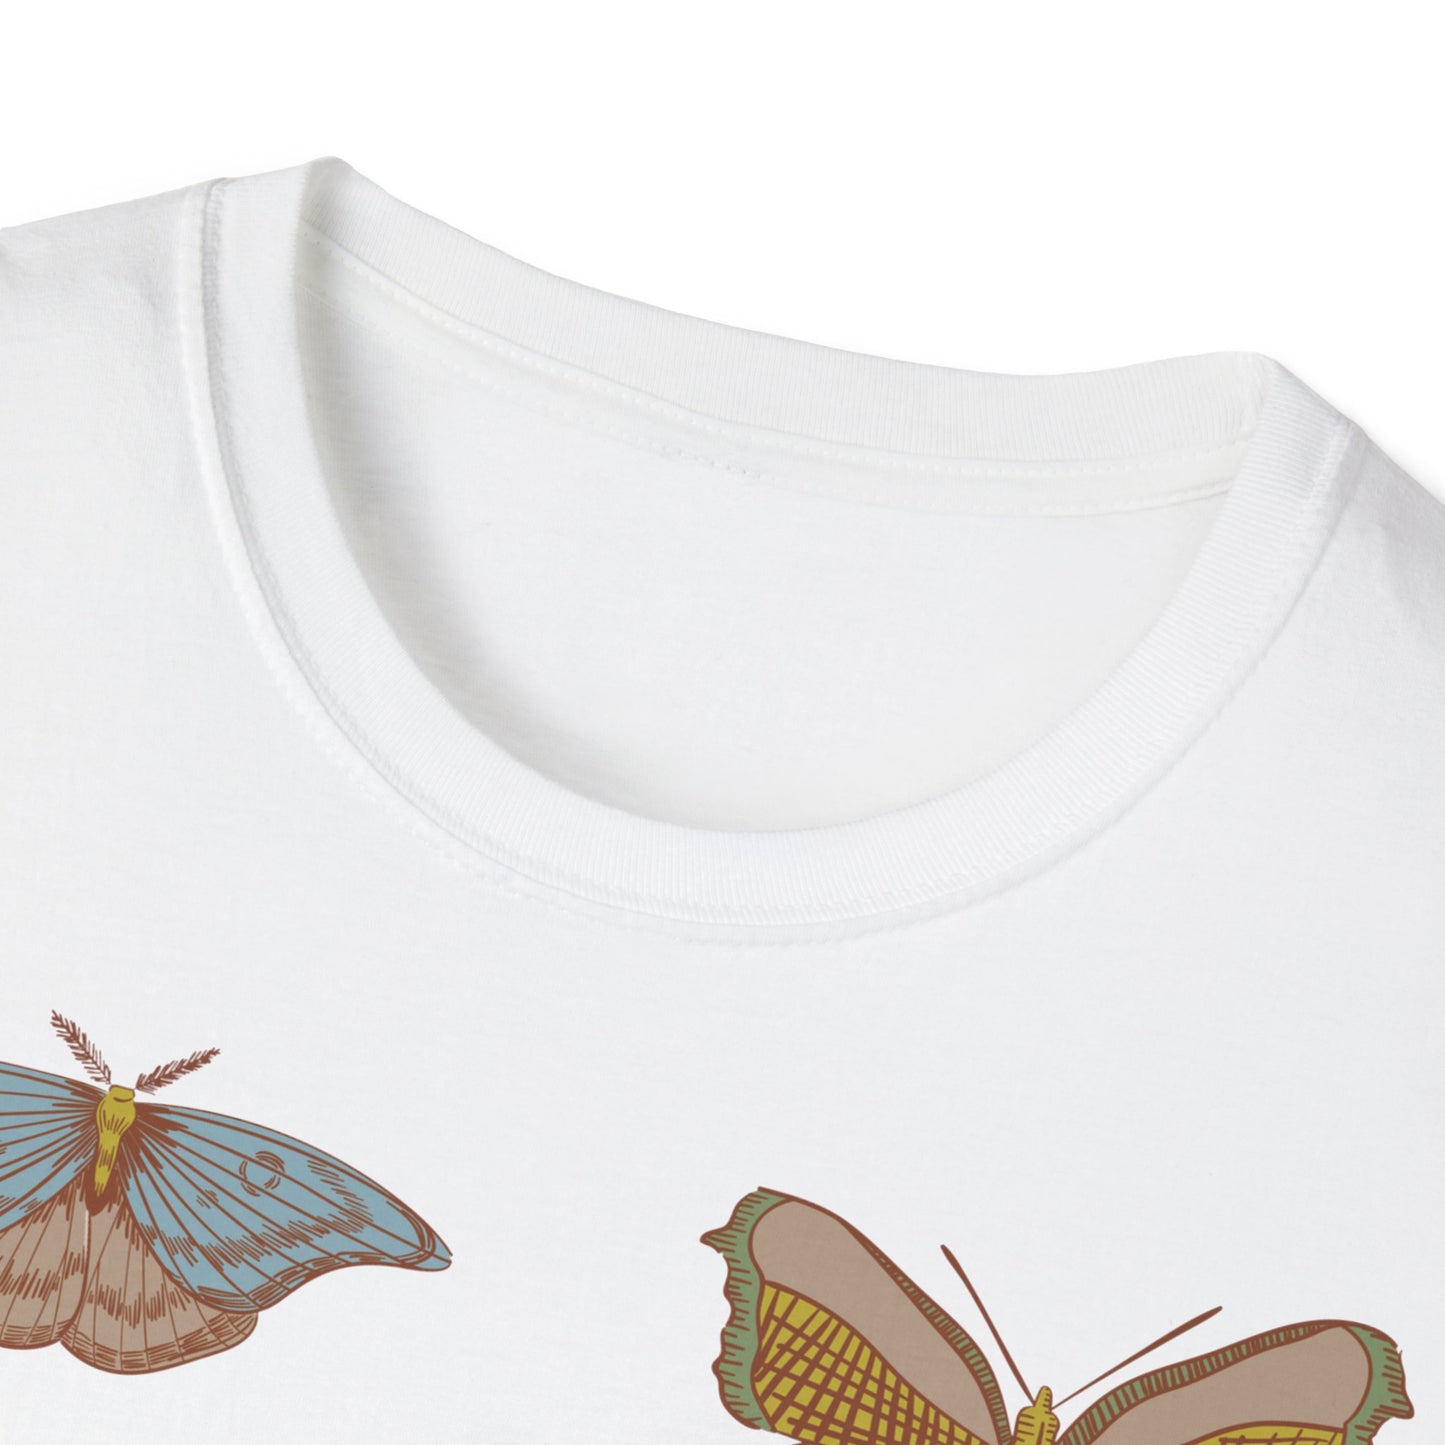 Camiseta Vintage Unisex Ética y Sostenible con mariposas sin fondo - Gildan